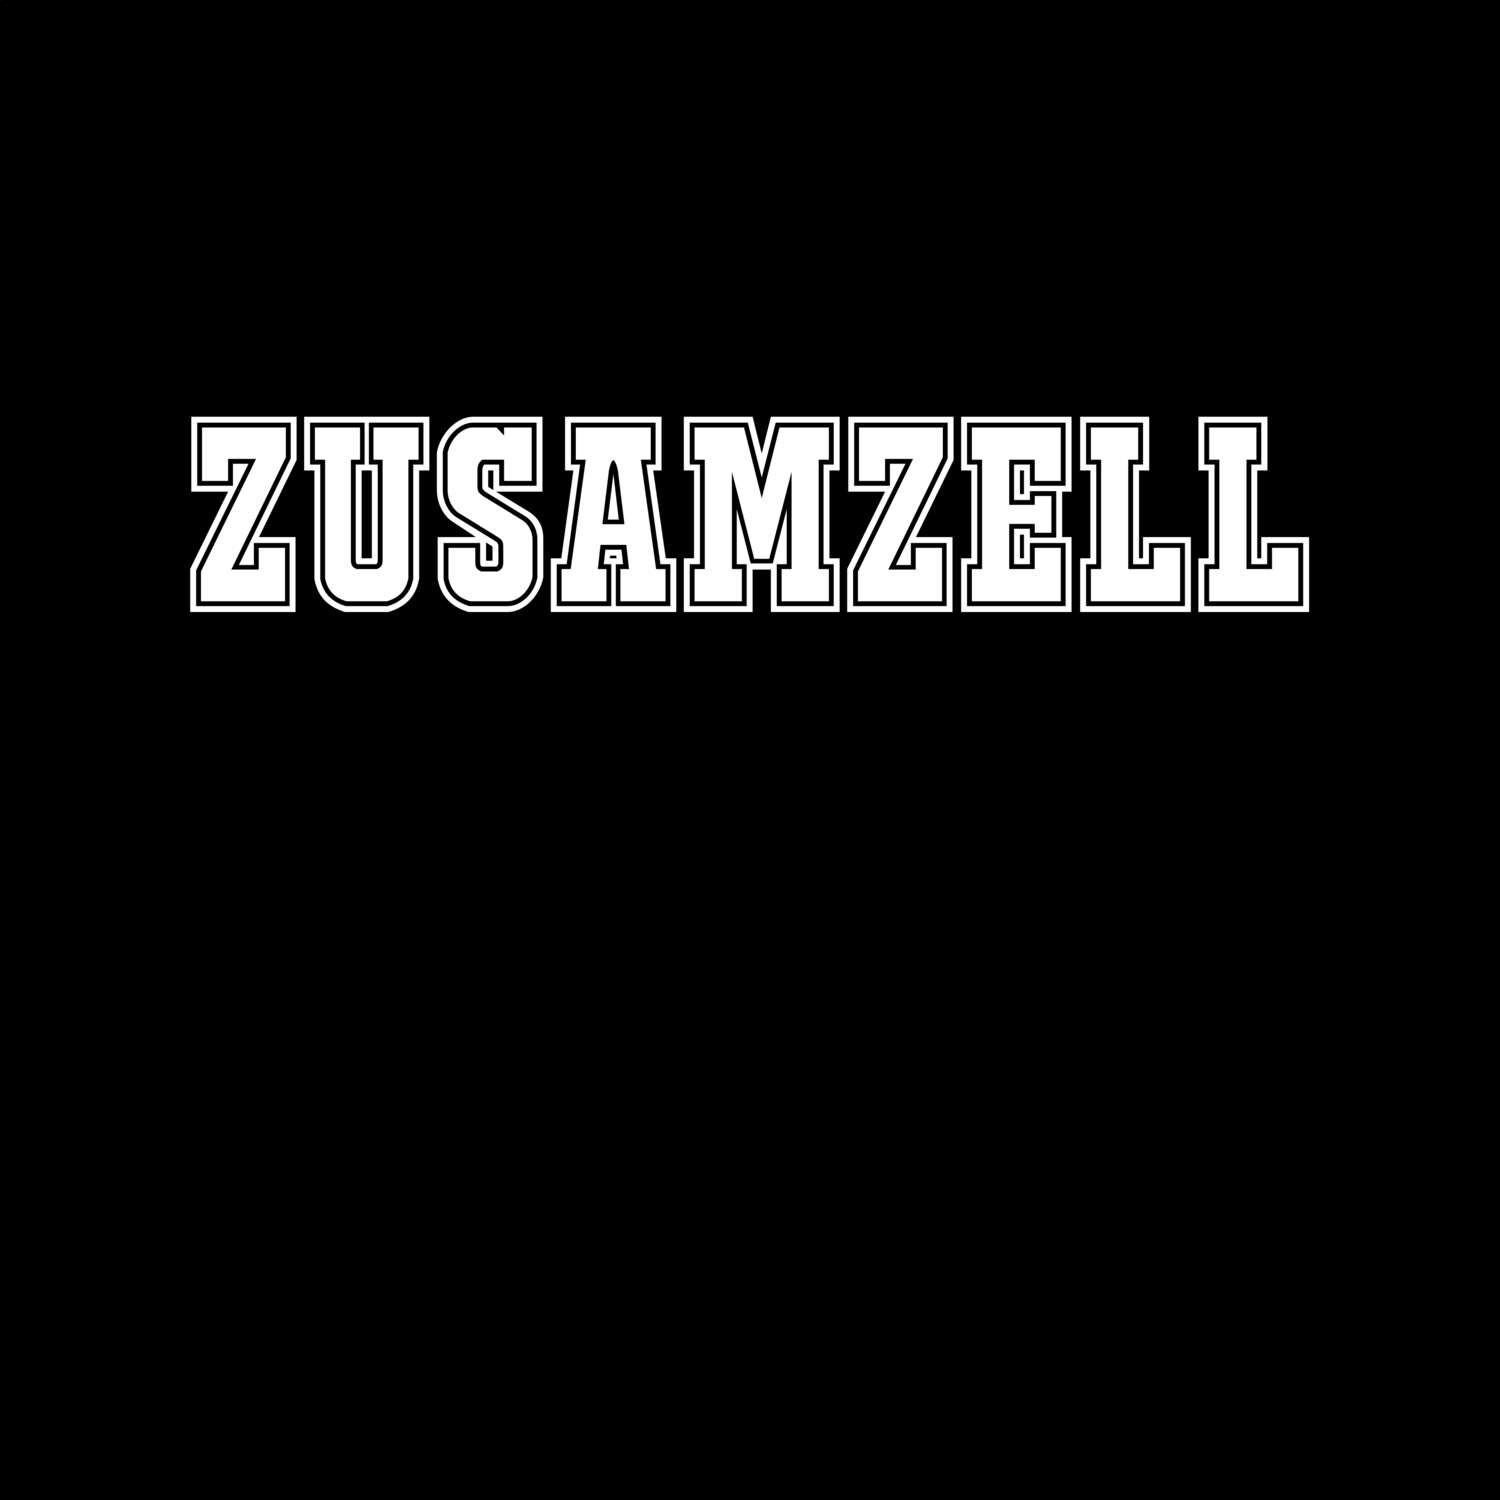 Zusamzell T-Shirt »Classic«